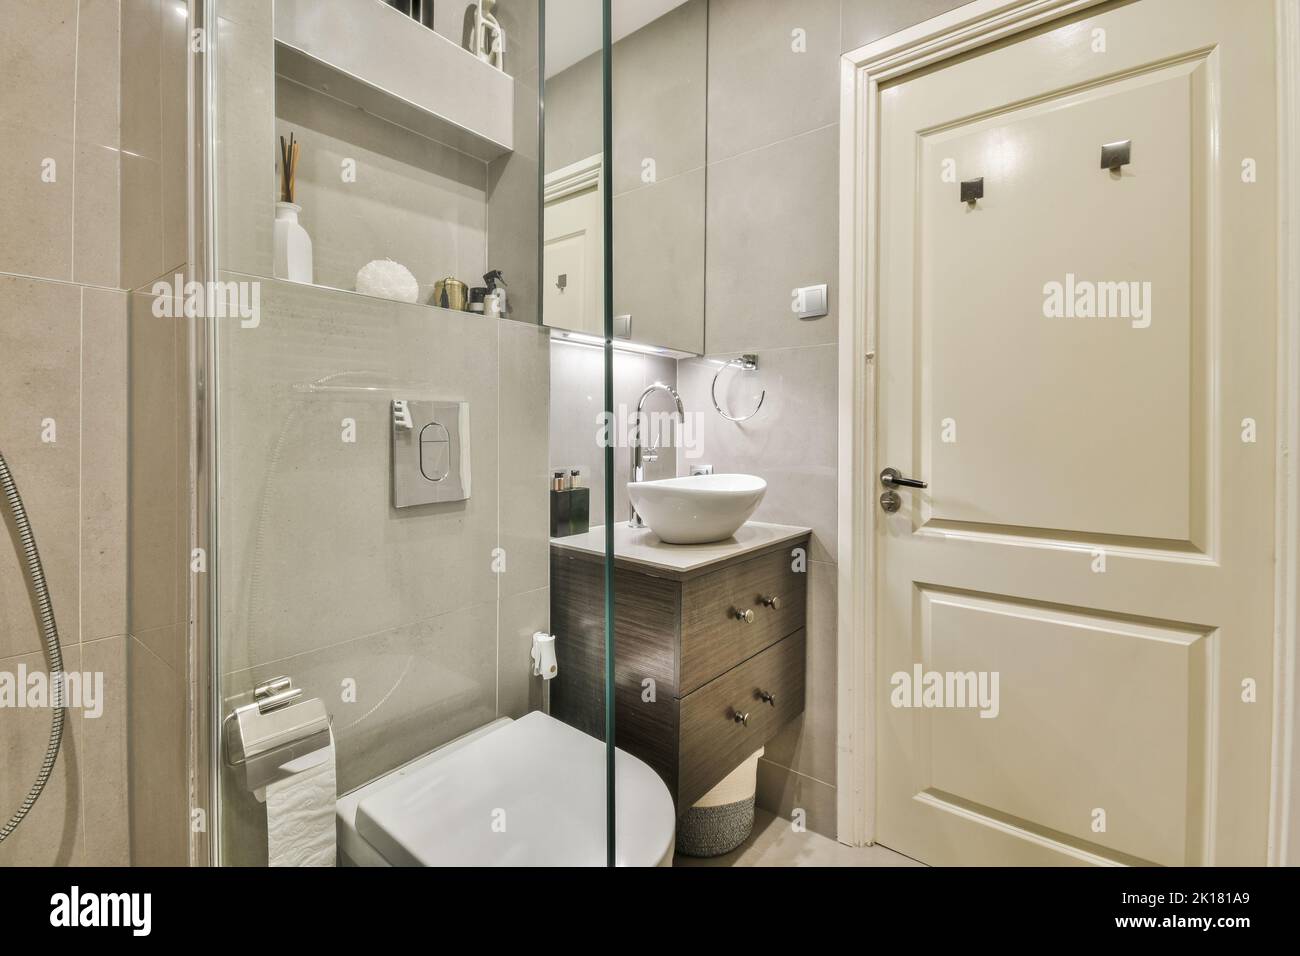 Cloison en verre entre le robinet de douche et les toilettes murales dans les toilettes modernes de la maison Banque D'Images